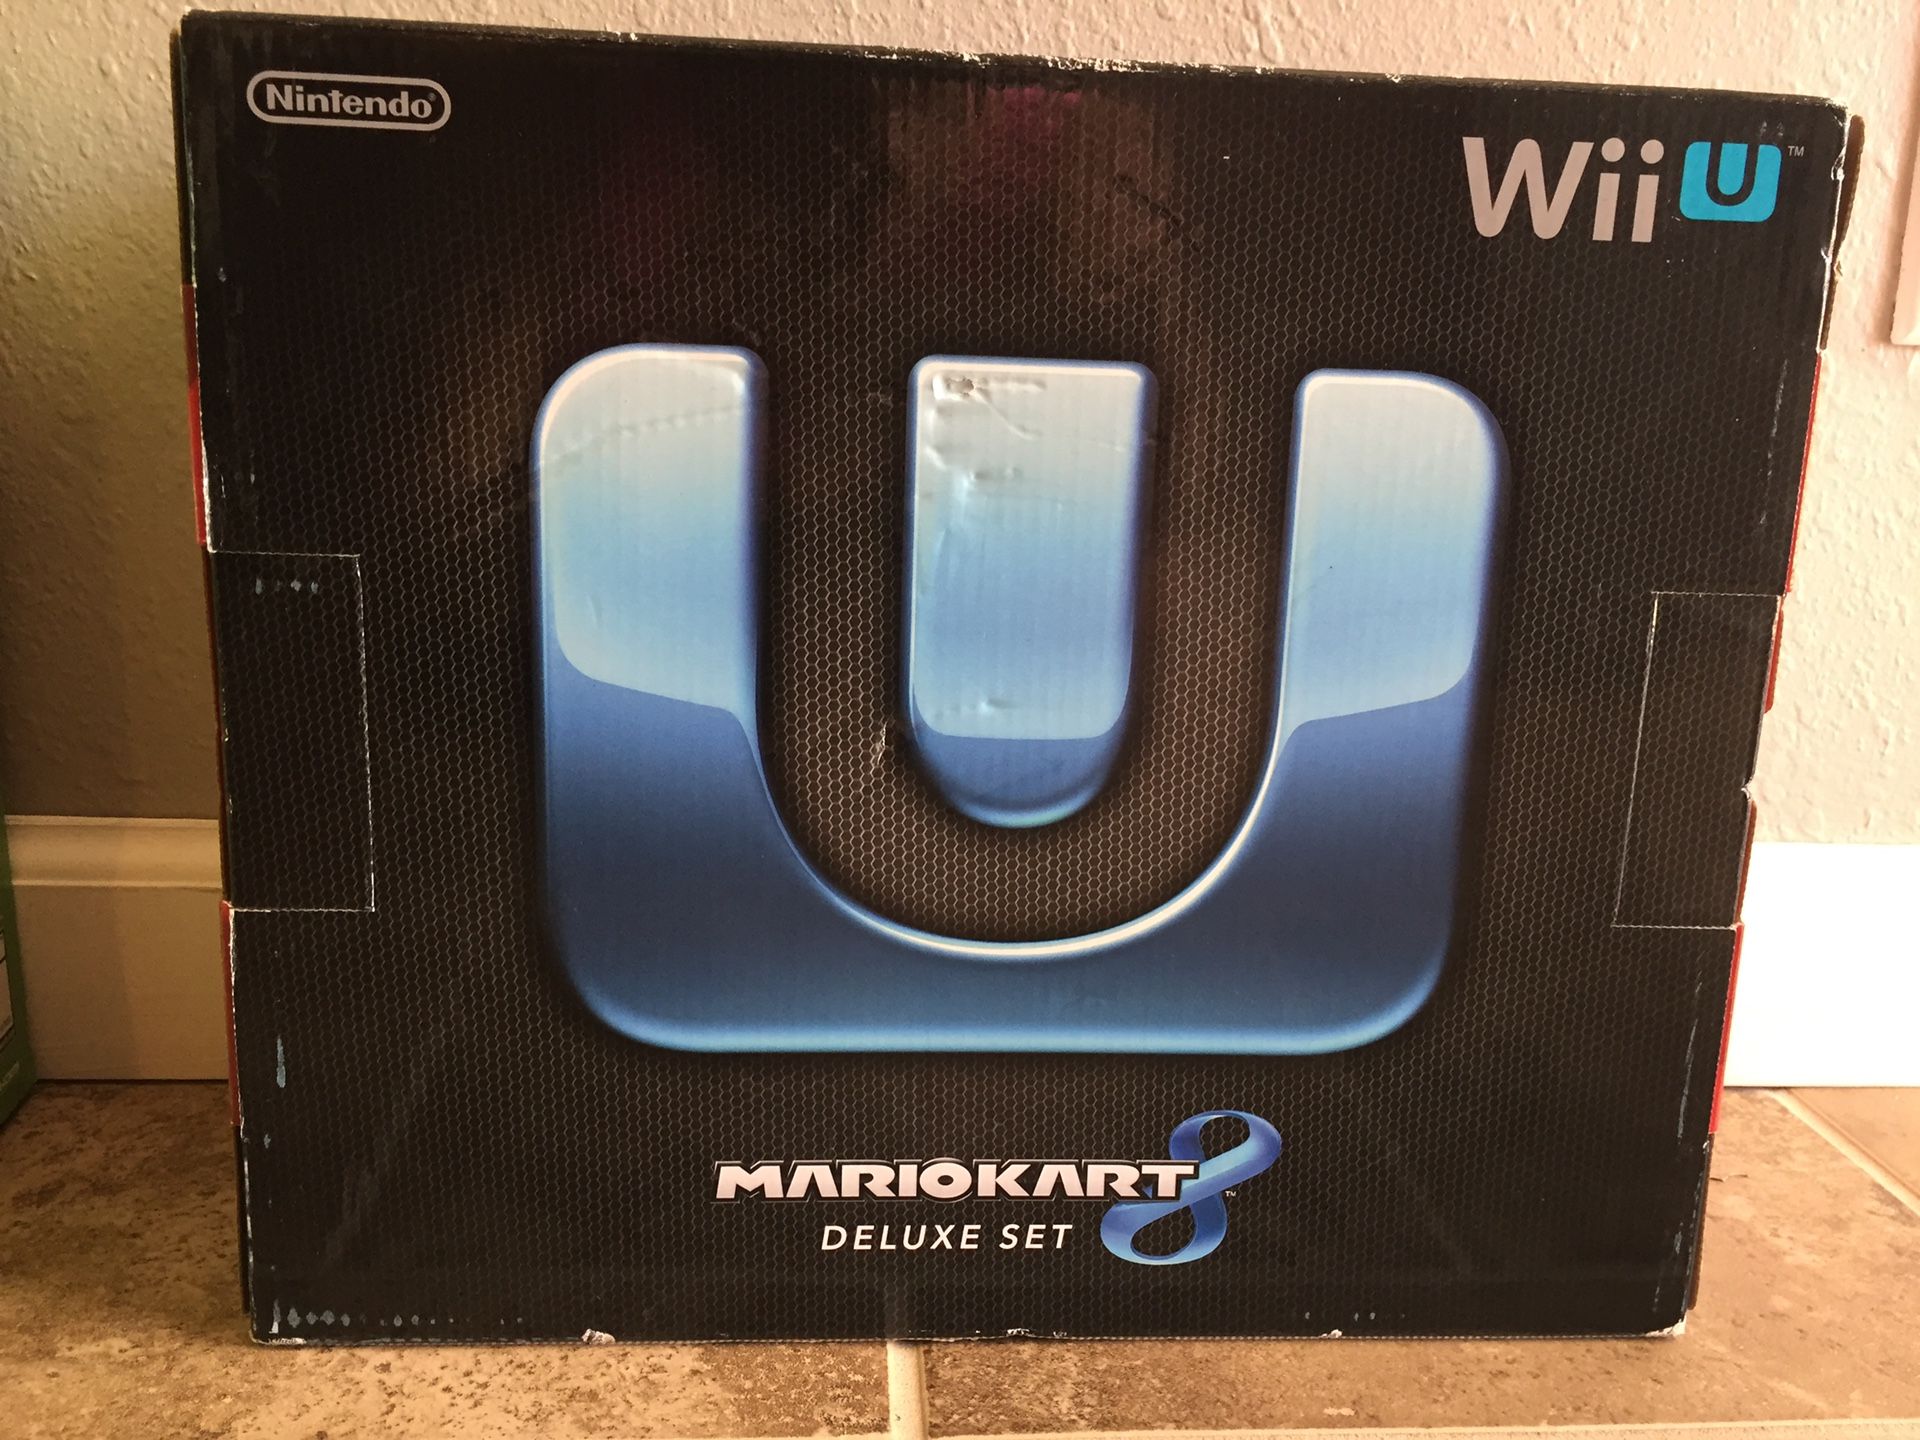 Brand new Wii U Deluxe Set!!!